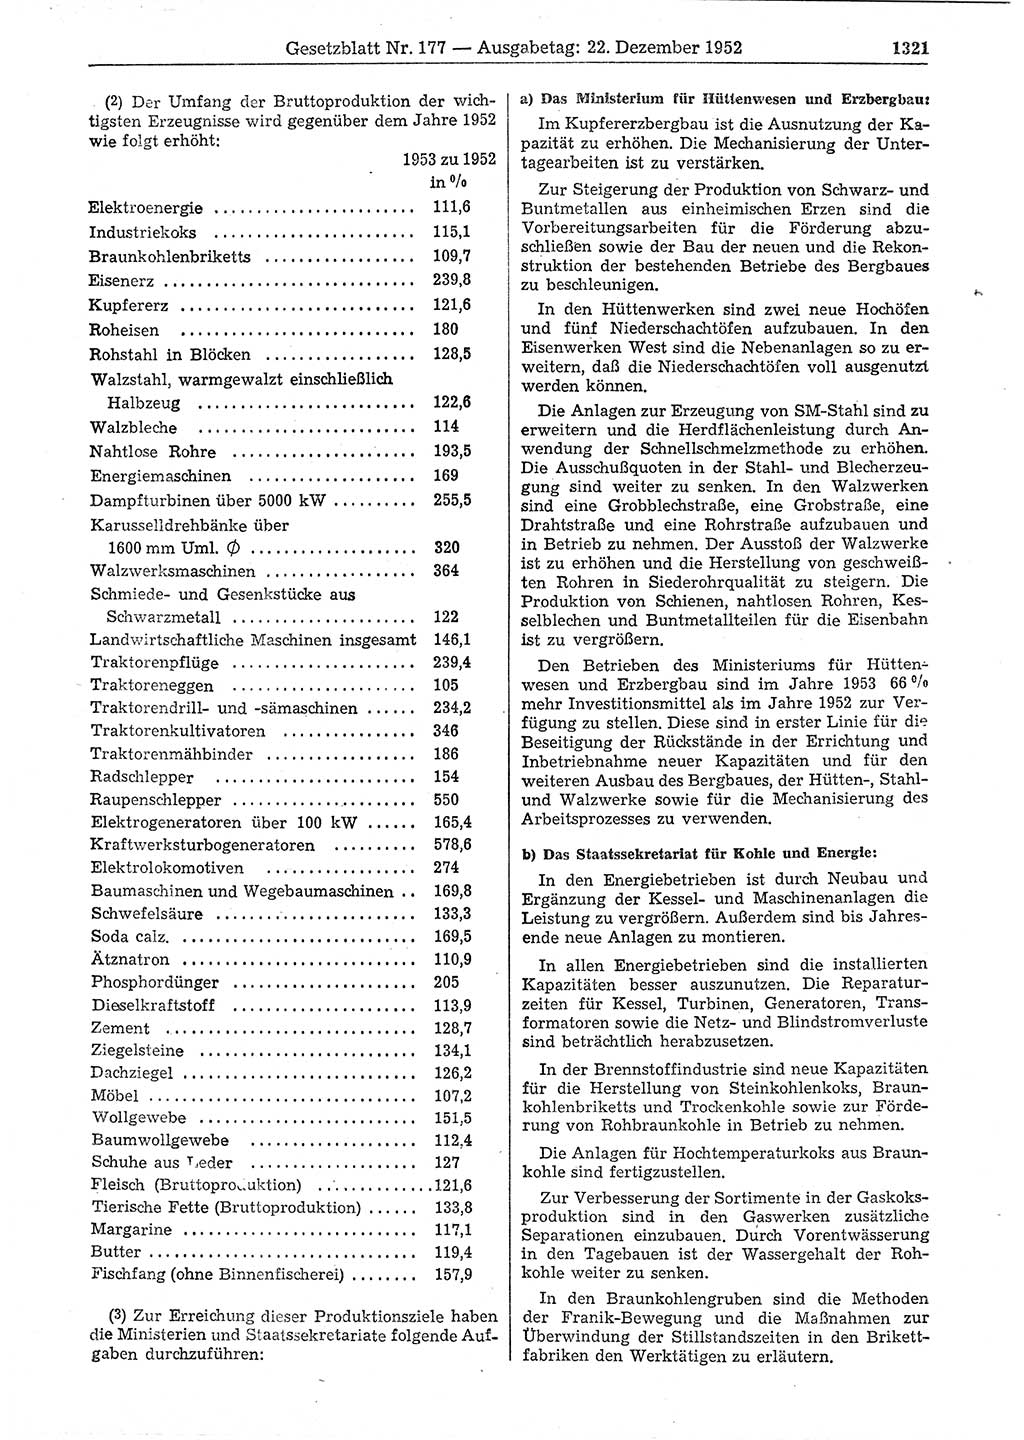 Gesetzblatt (GBl.) der Deutschen Demokratischen Republik (DDR) 1952, Seite 1321 (GBl. DDR 1952, S. 1321)